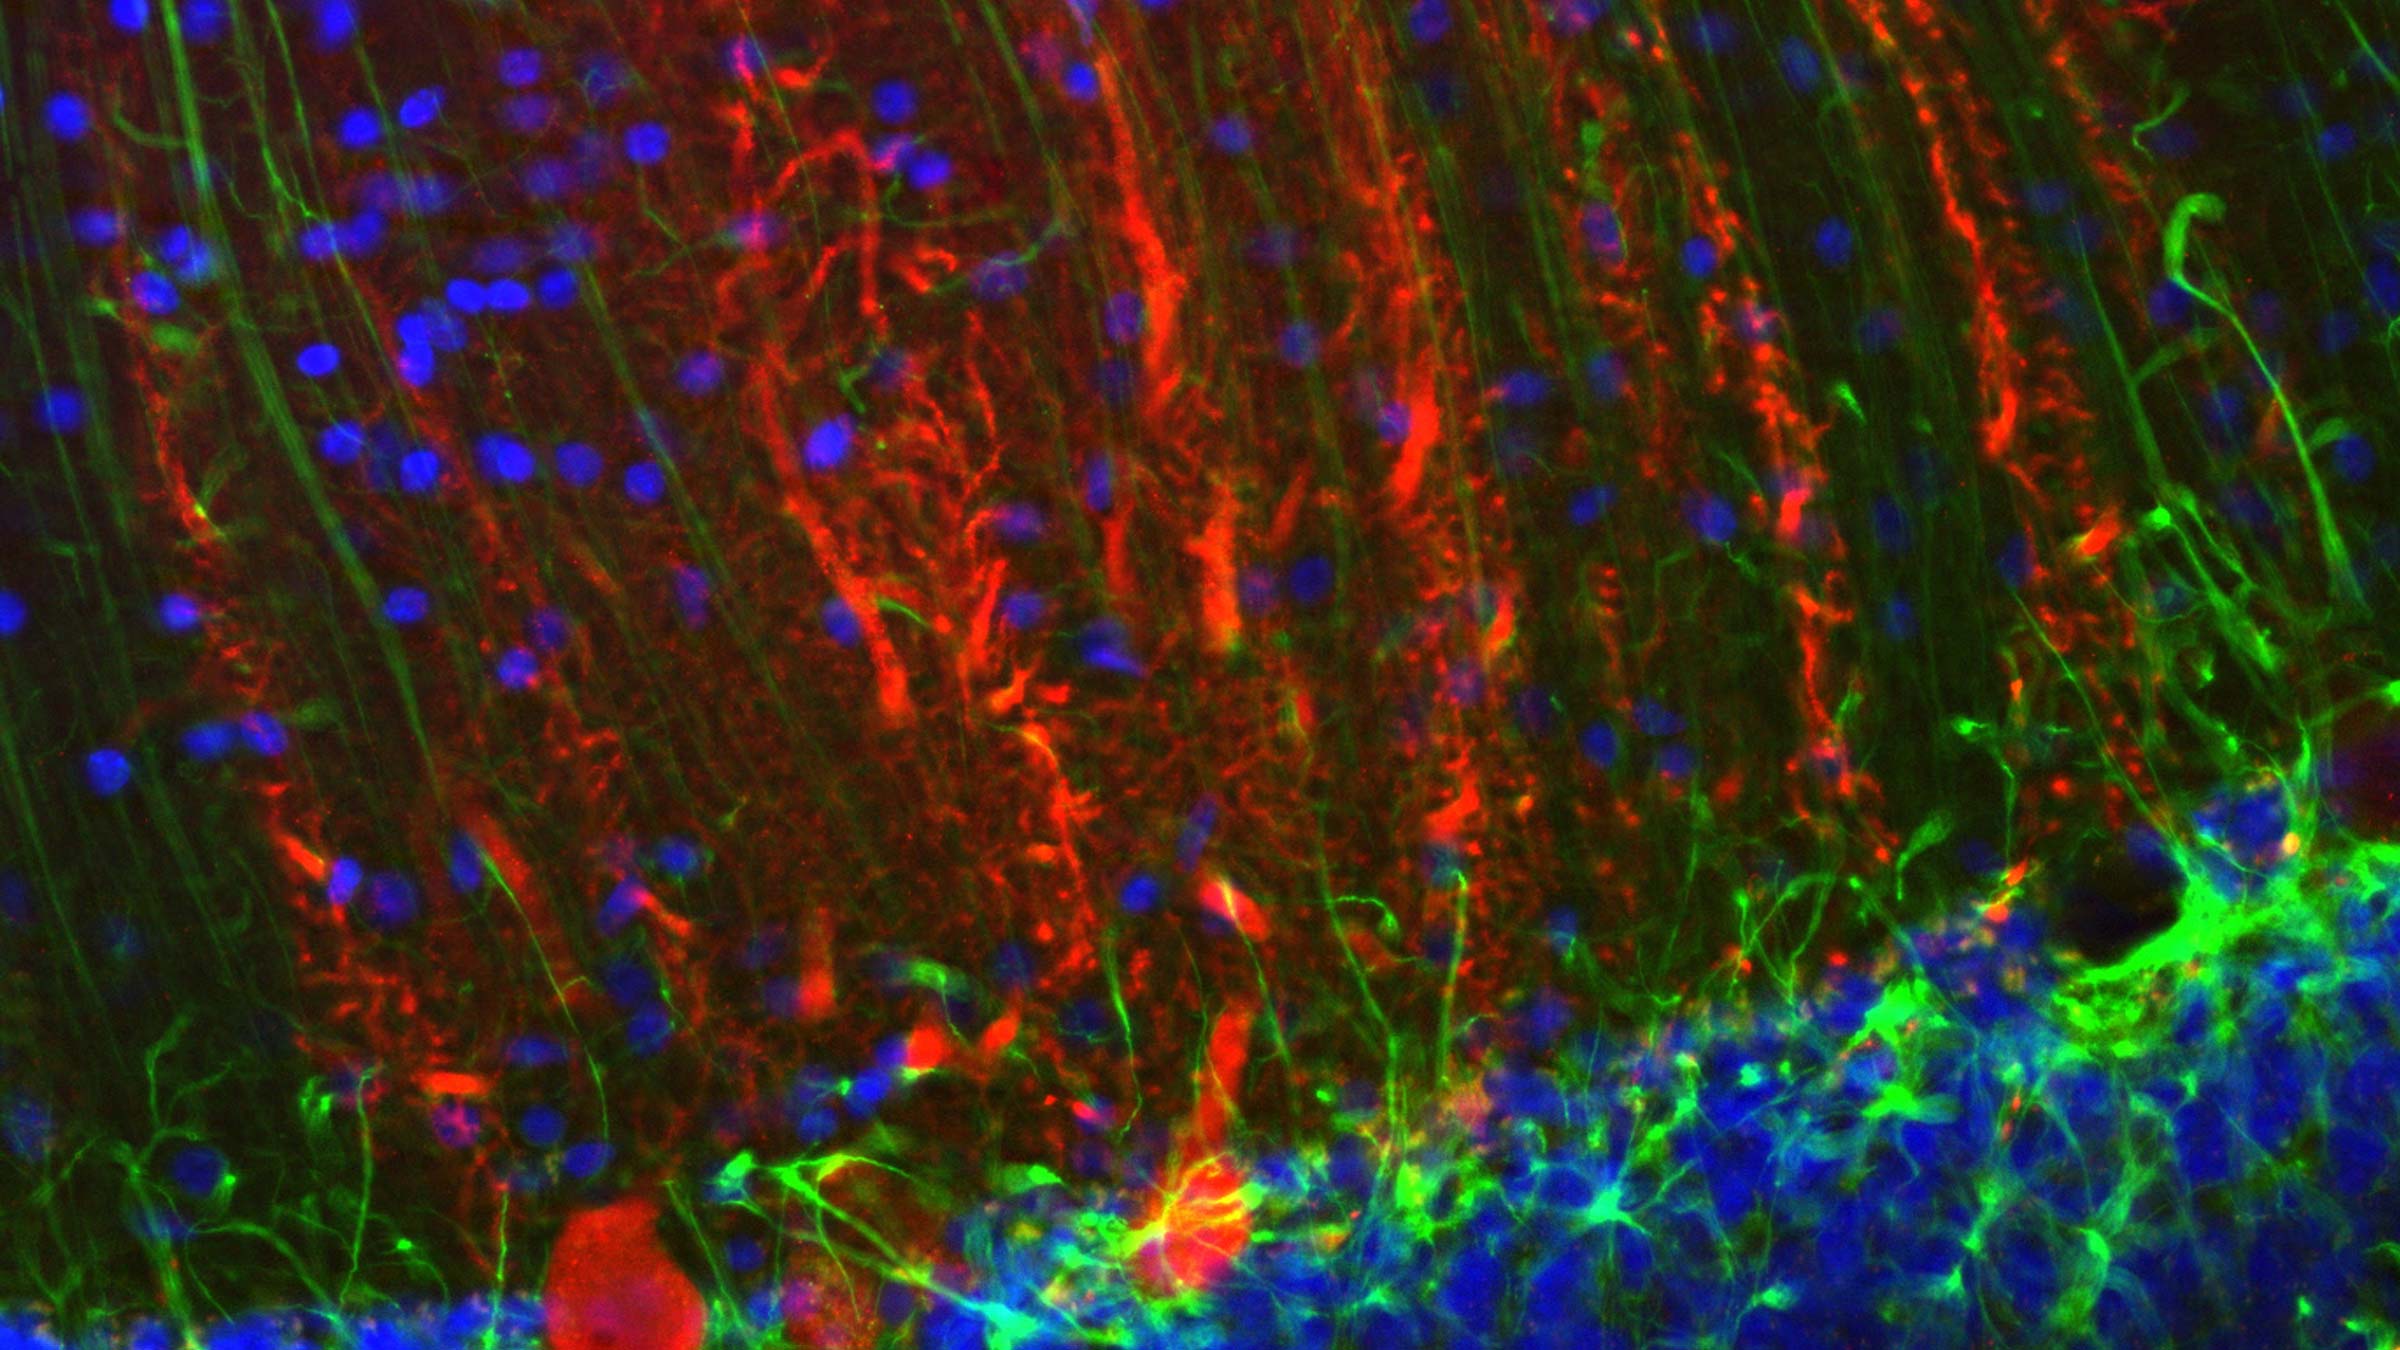 Microimaging of the cerebellar cortex in the brain